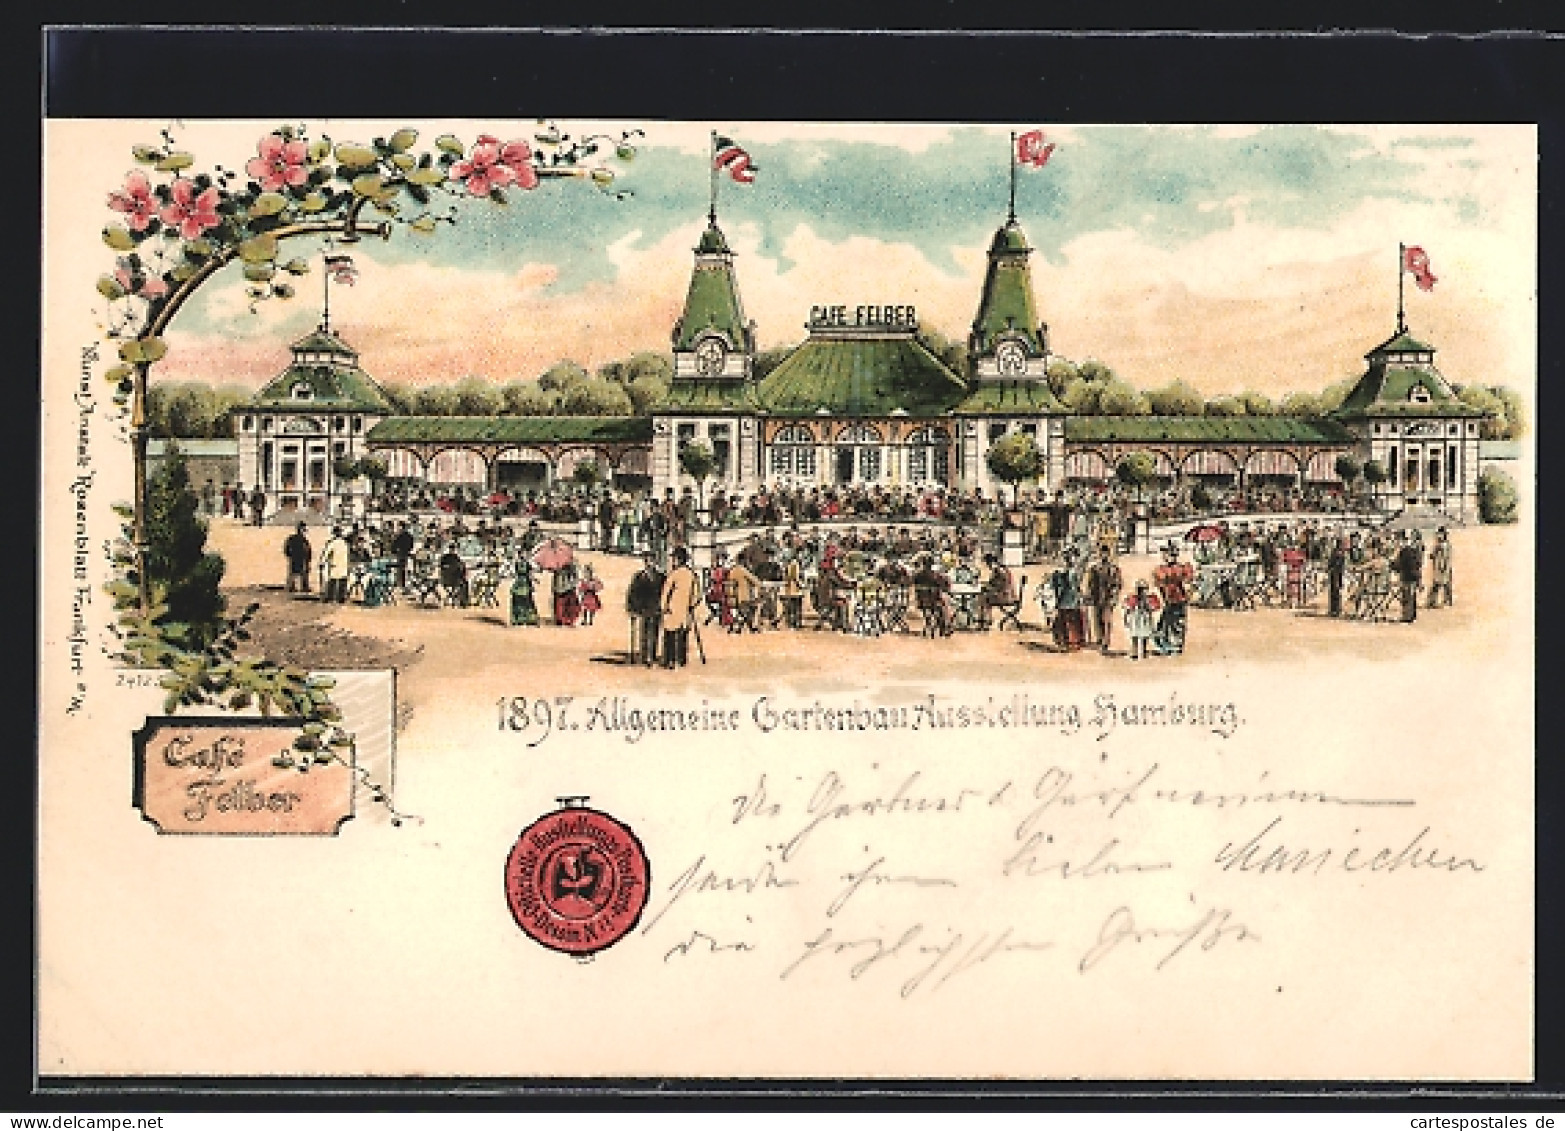 Lithographie Hamburg, Allgemeine Gartenbau-Ausstellung 1897, Cafe Felber  - Exhibitions